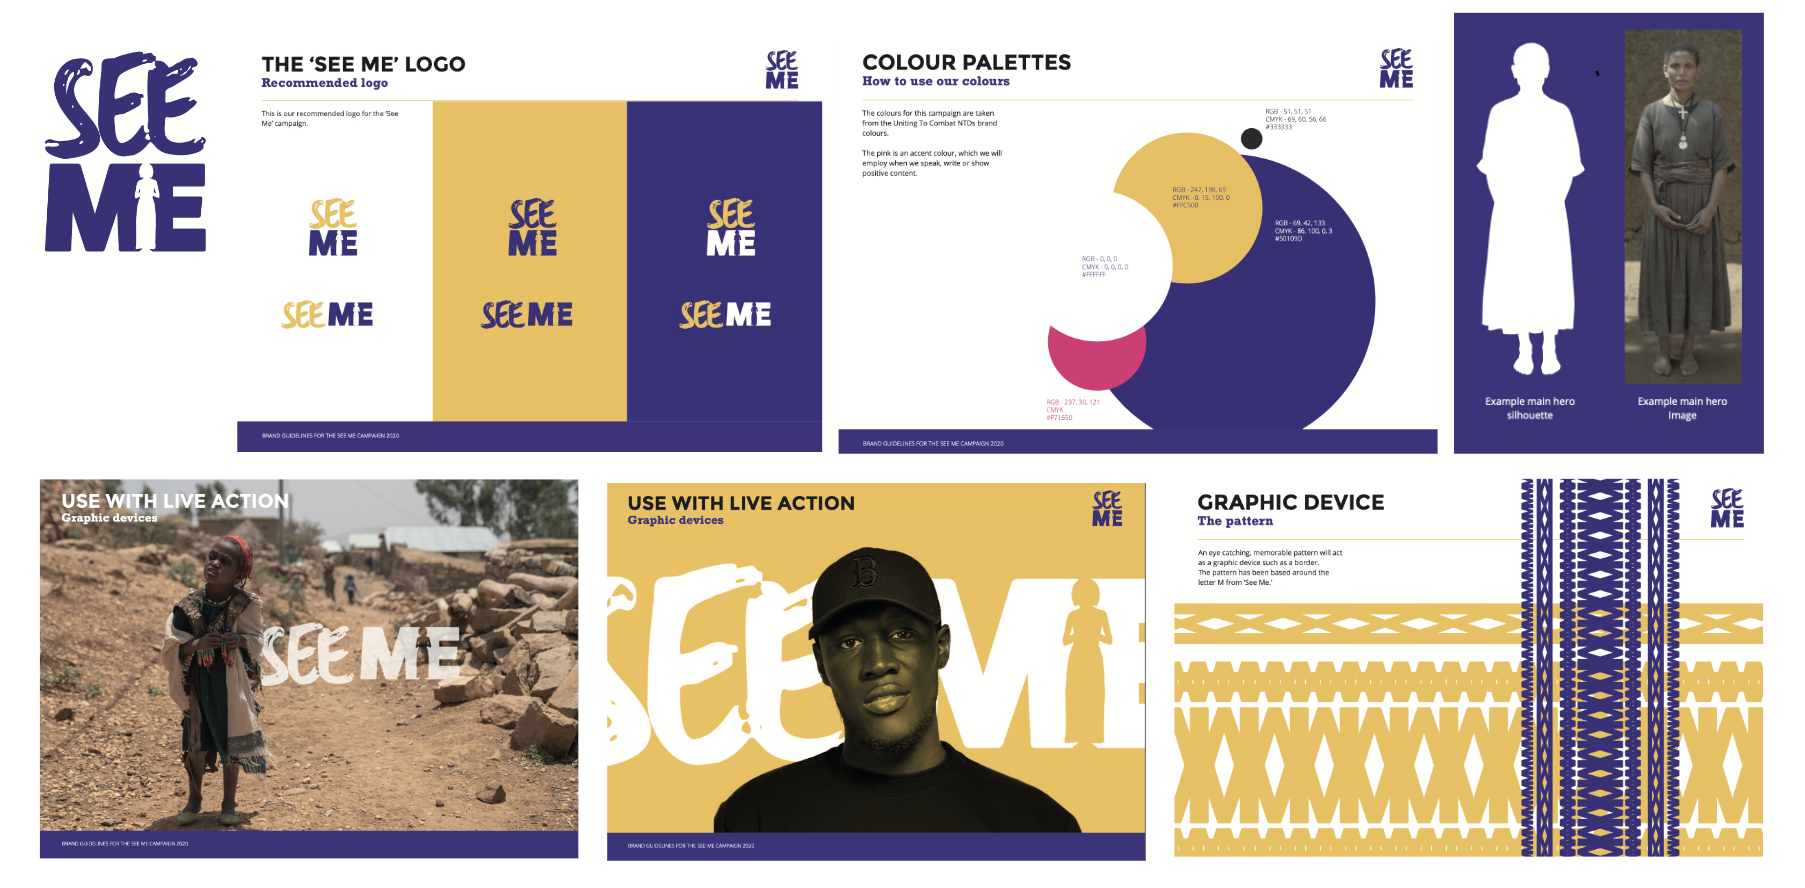 'SEE ME' campaign design